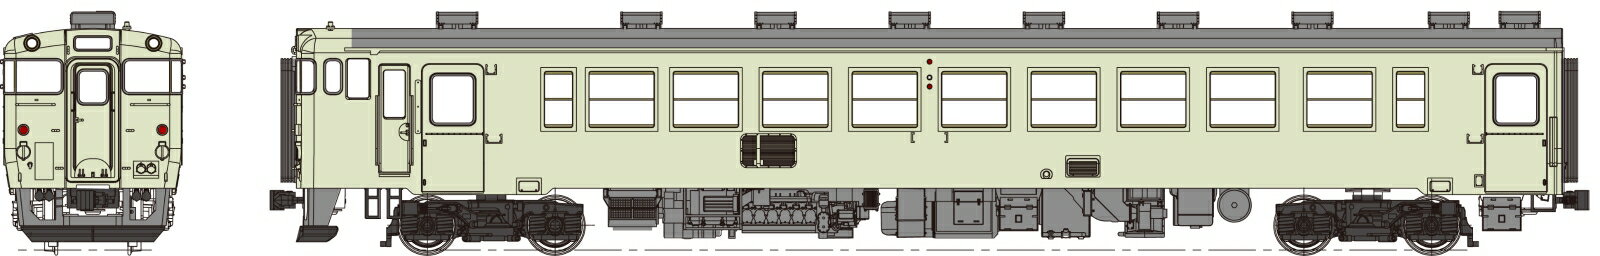 キハ48-1500代クリーム10号、動力なし 【TW-K48-1500ET】 (鉄道模型 HOゲージ)